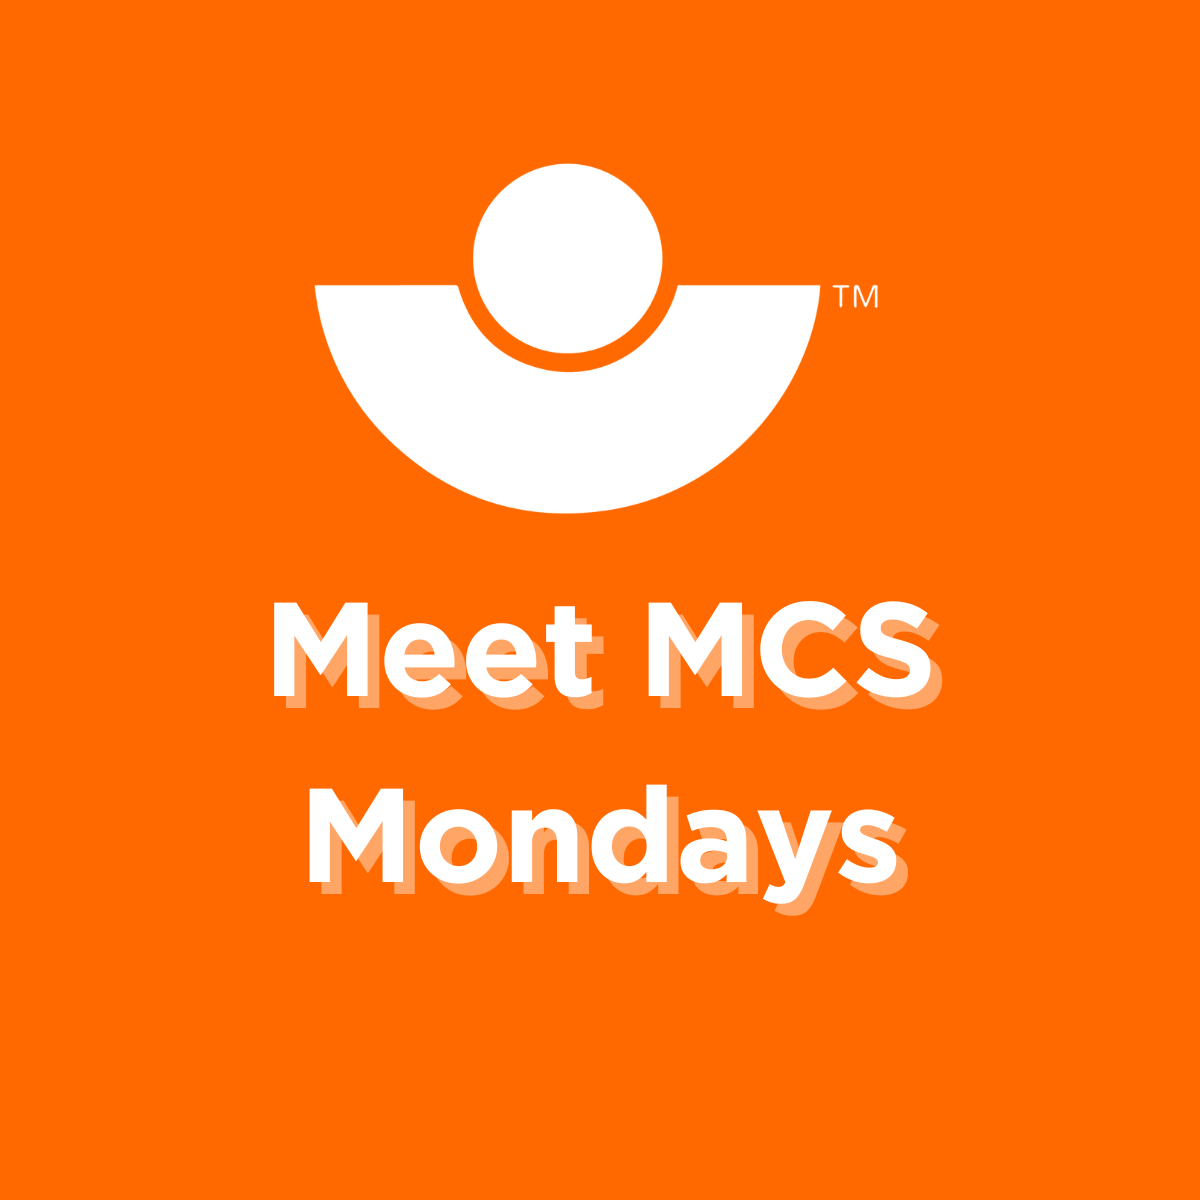 Meet MCS Monday- Introducing Paula McCalmont